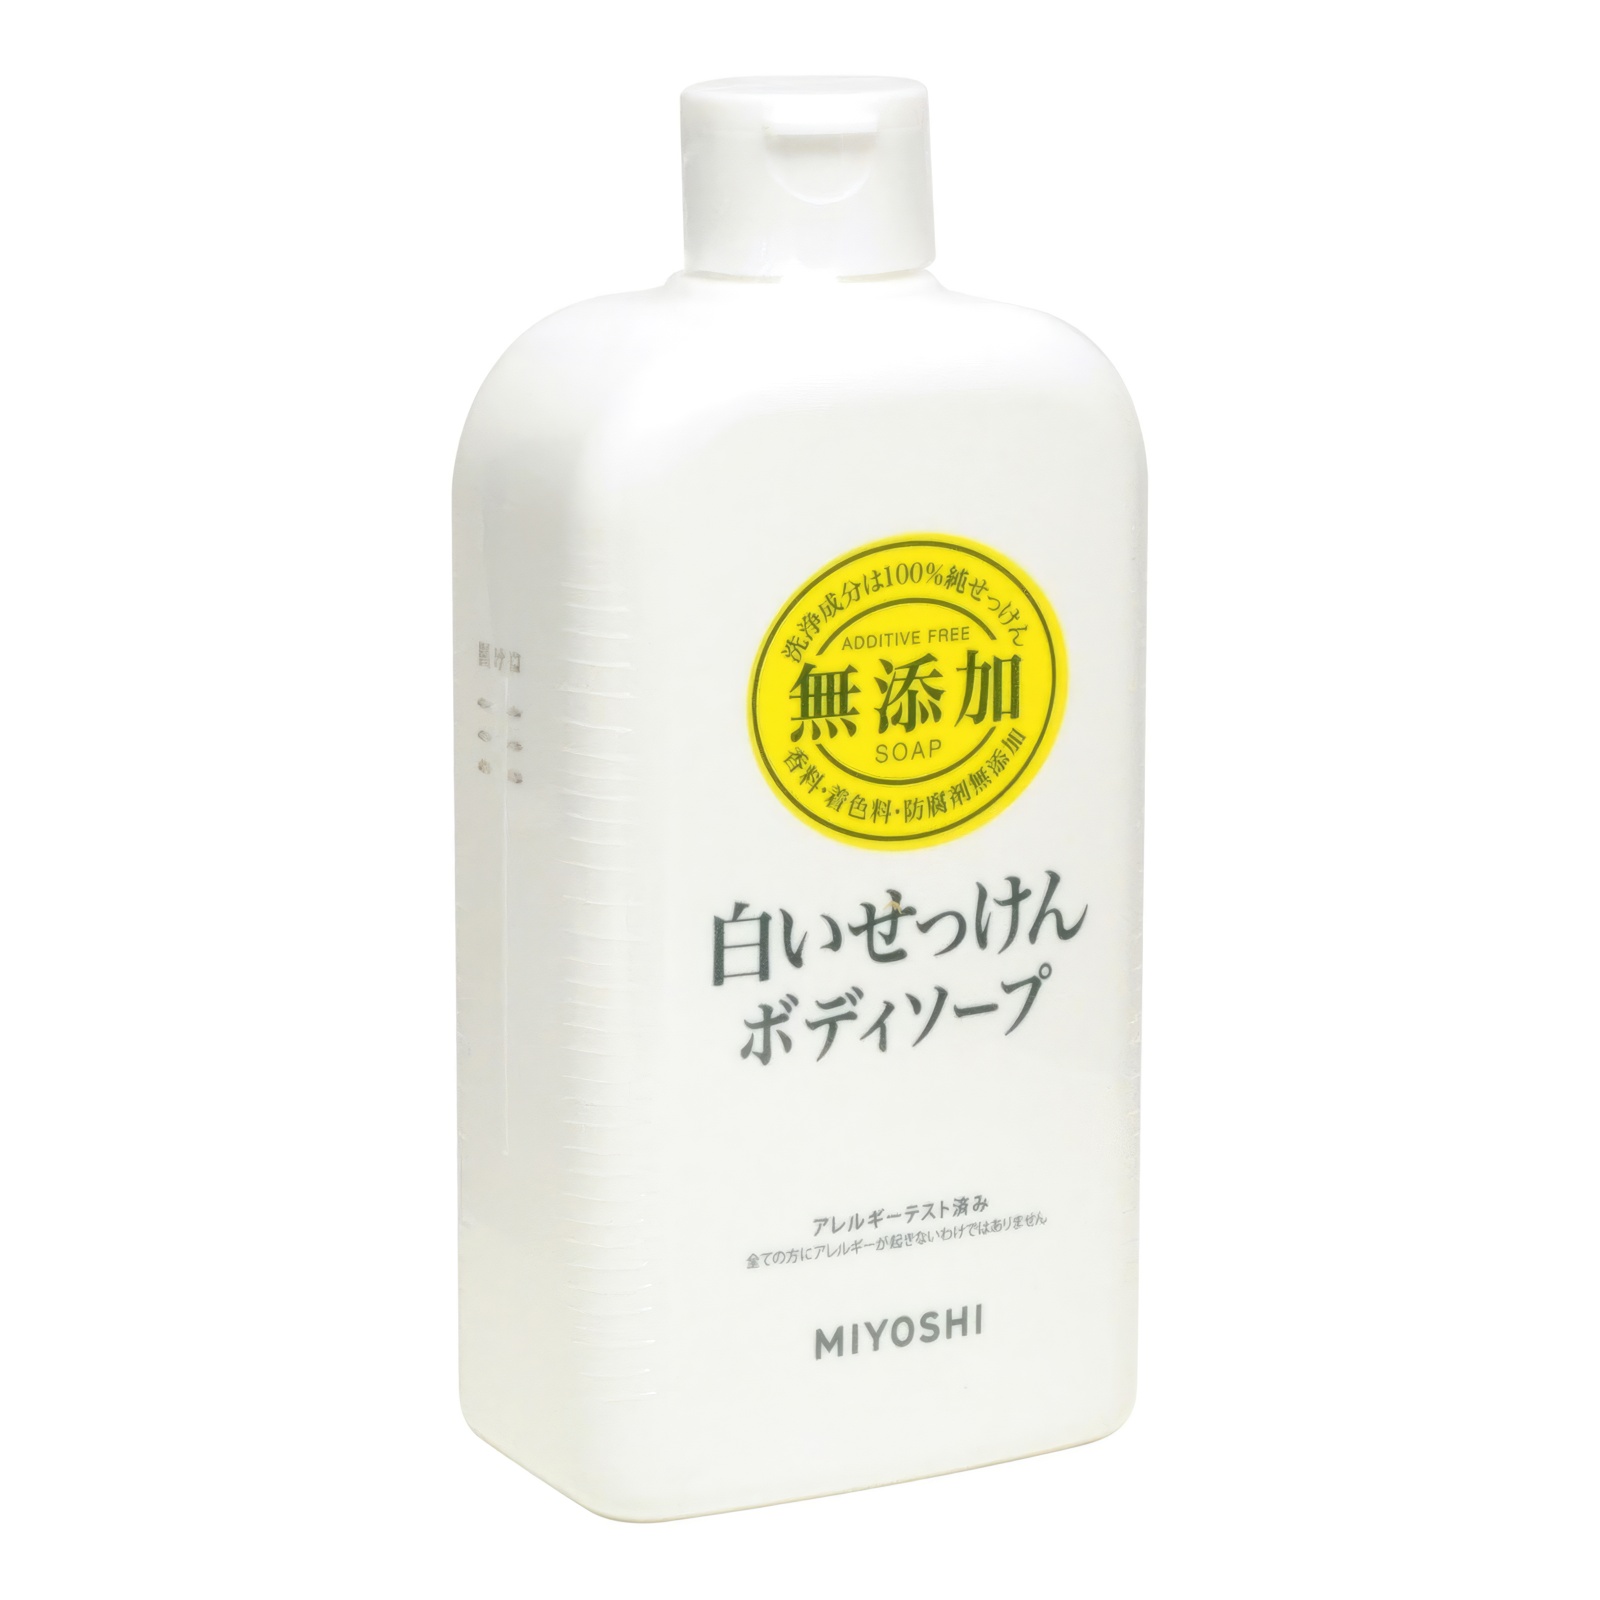 Натуральное жидкое гель-мыло MIYOSHI эко для тела 400 мл synergetic жидкое мыло лемонграсс и мята антибактериальное с эффектом нейтрализации запаха 1000 0